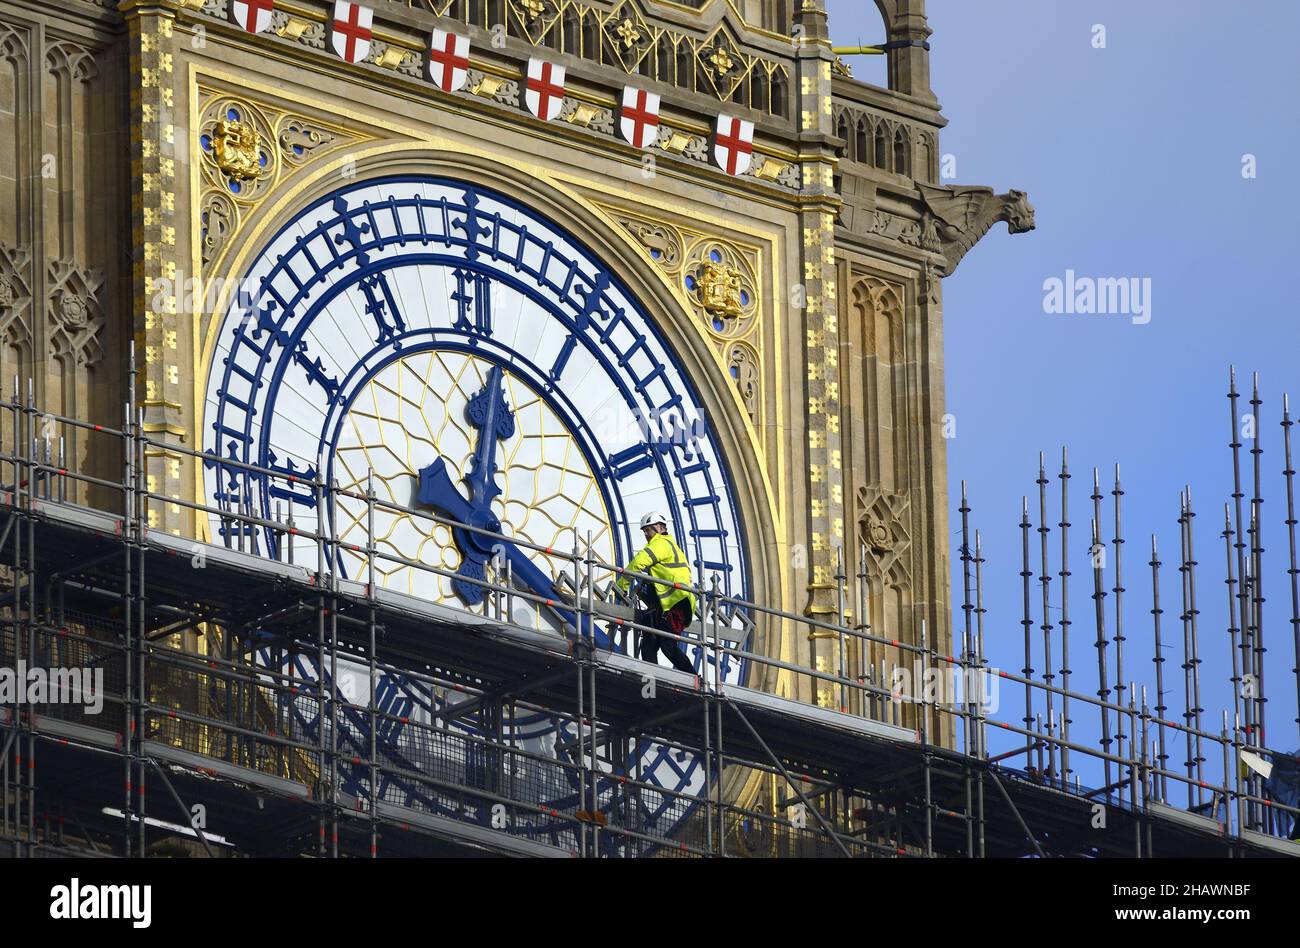 Londres, Angleterre, Royaume-Uni.Workman en haute visibilité passant devant la face d'horloge de Big Ben alors que l'échafaudage est enlevé après les rénovations et le nettoyage, Decembe Banque D'Images